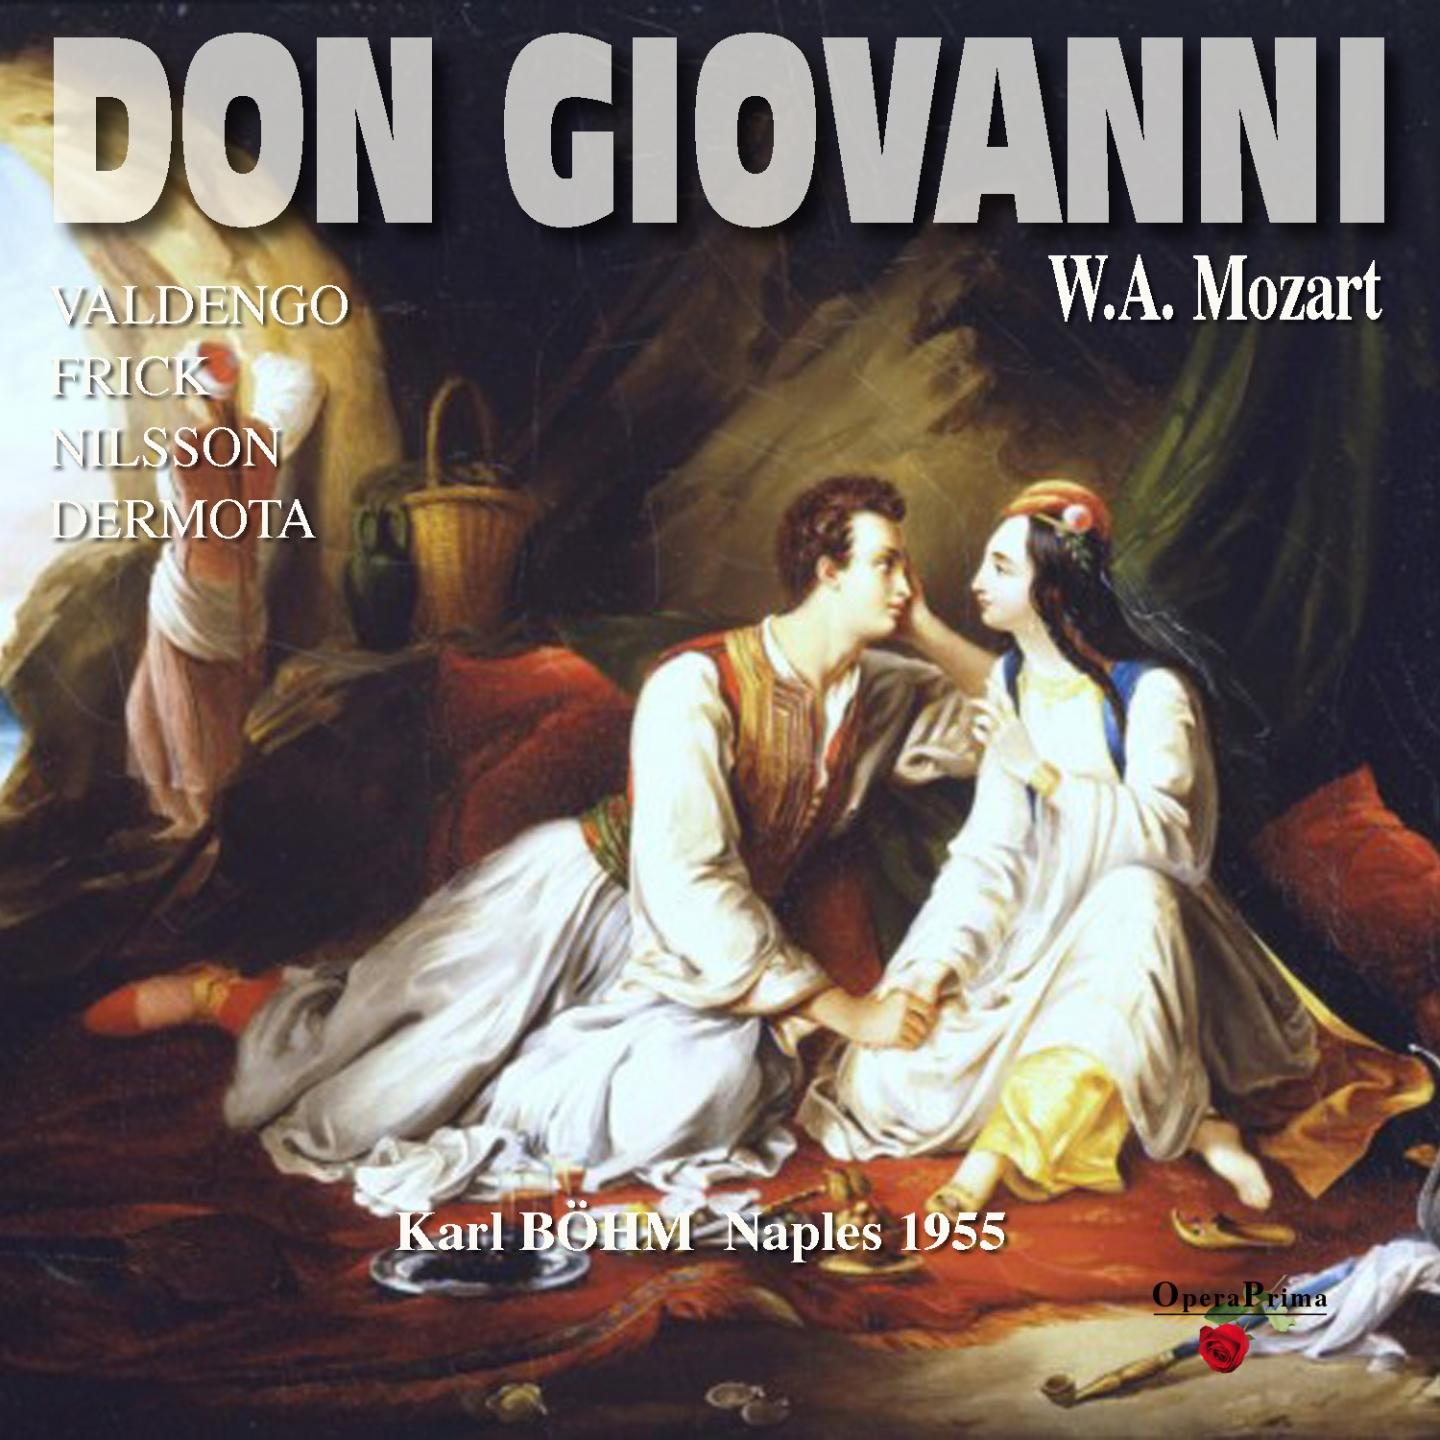 Don Giovanni: Act II  " Meta di voi qua vadano"